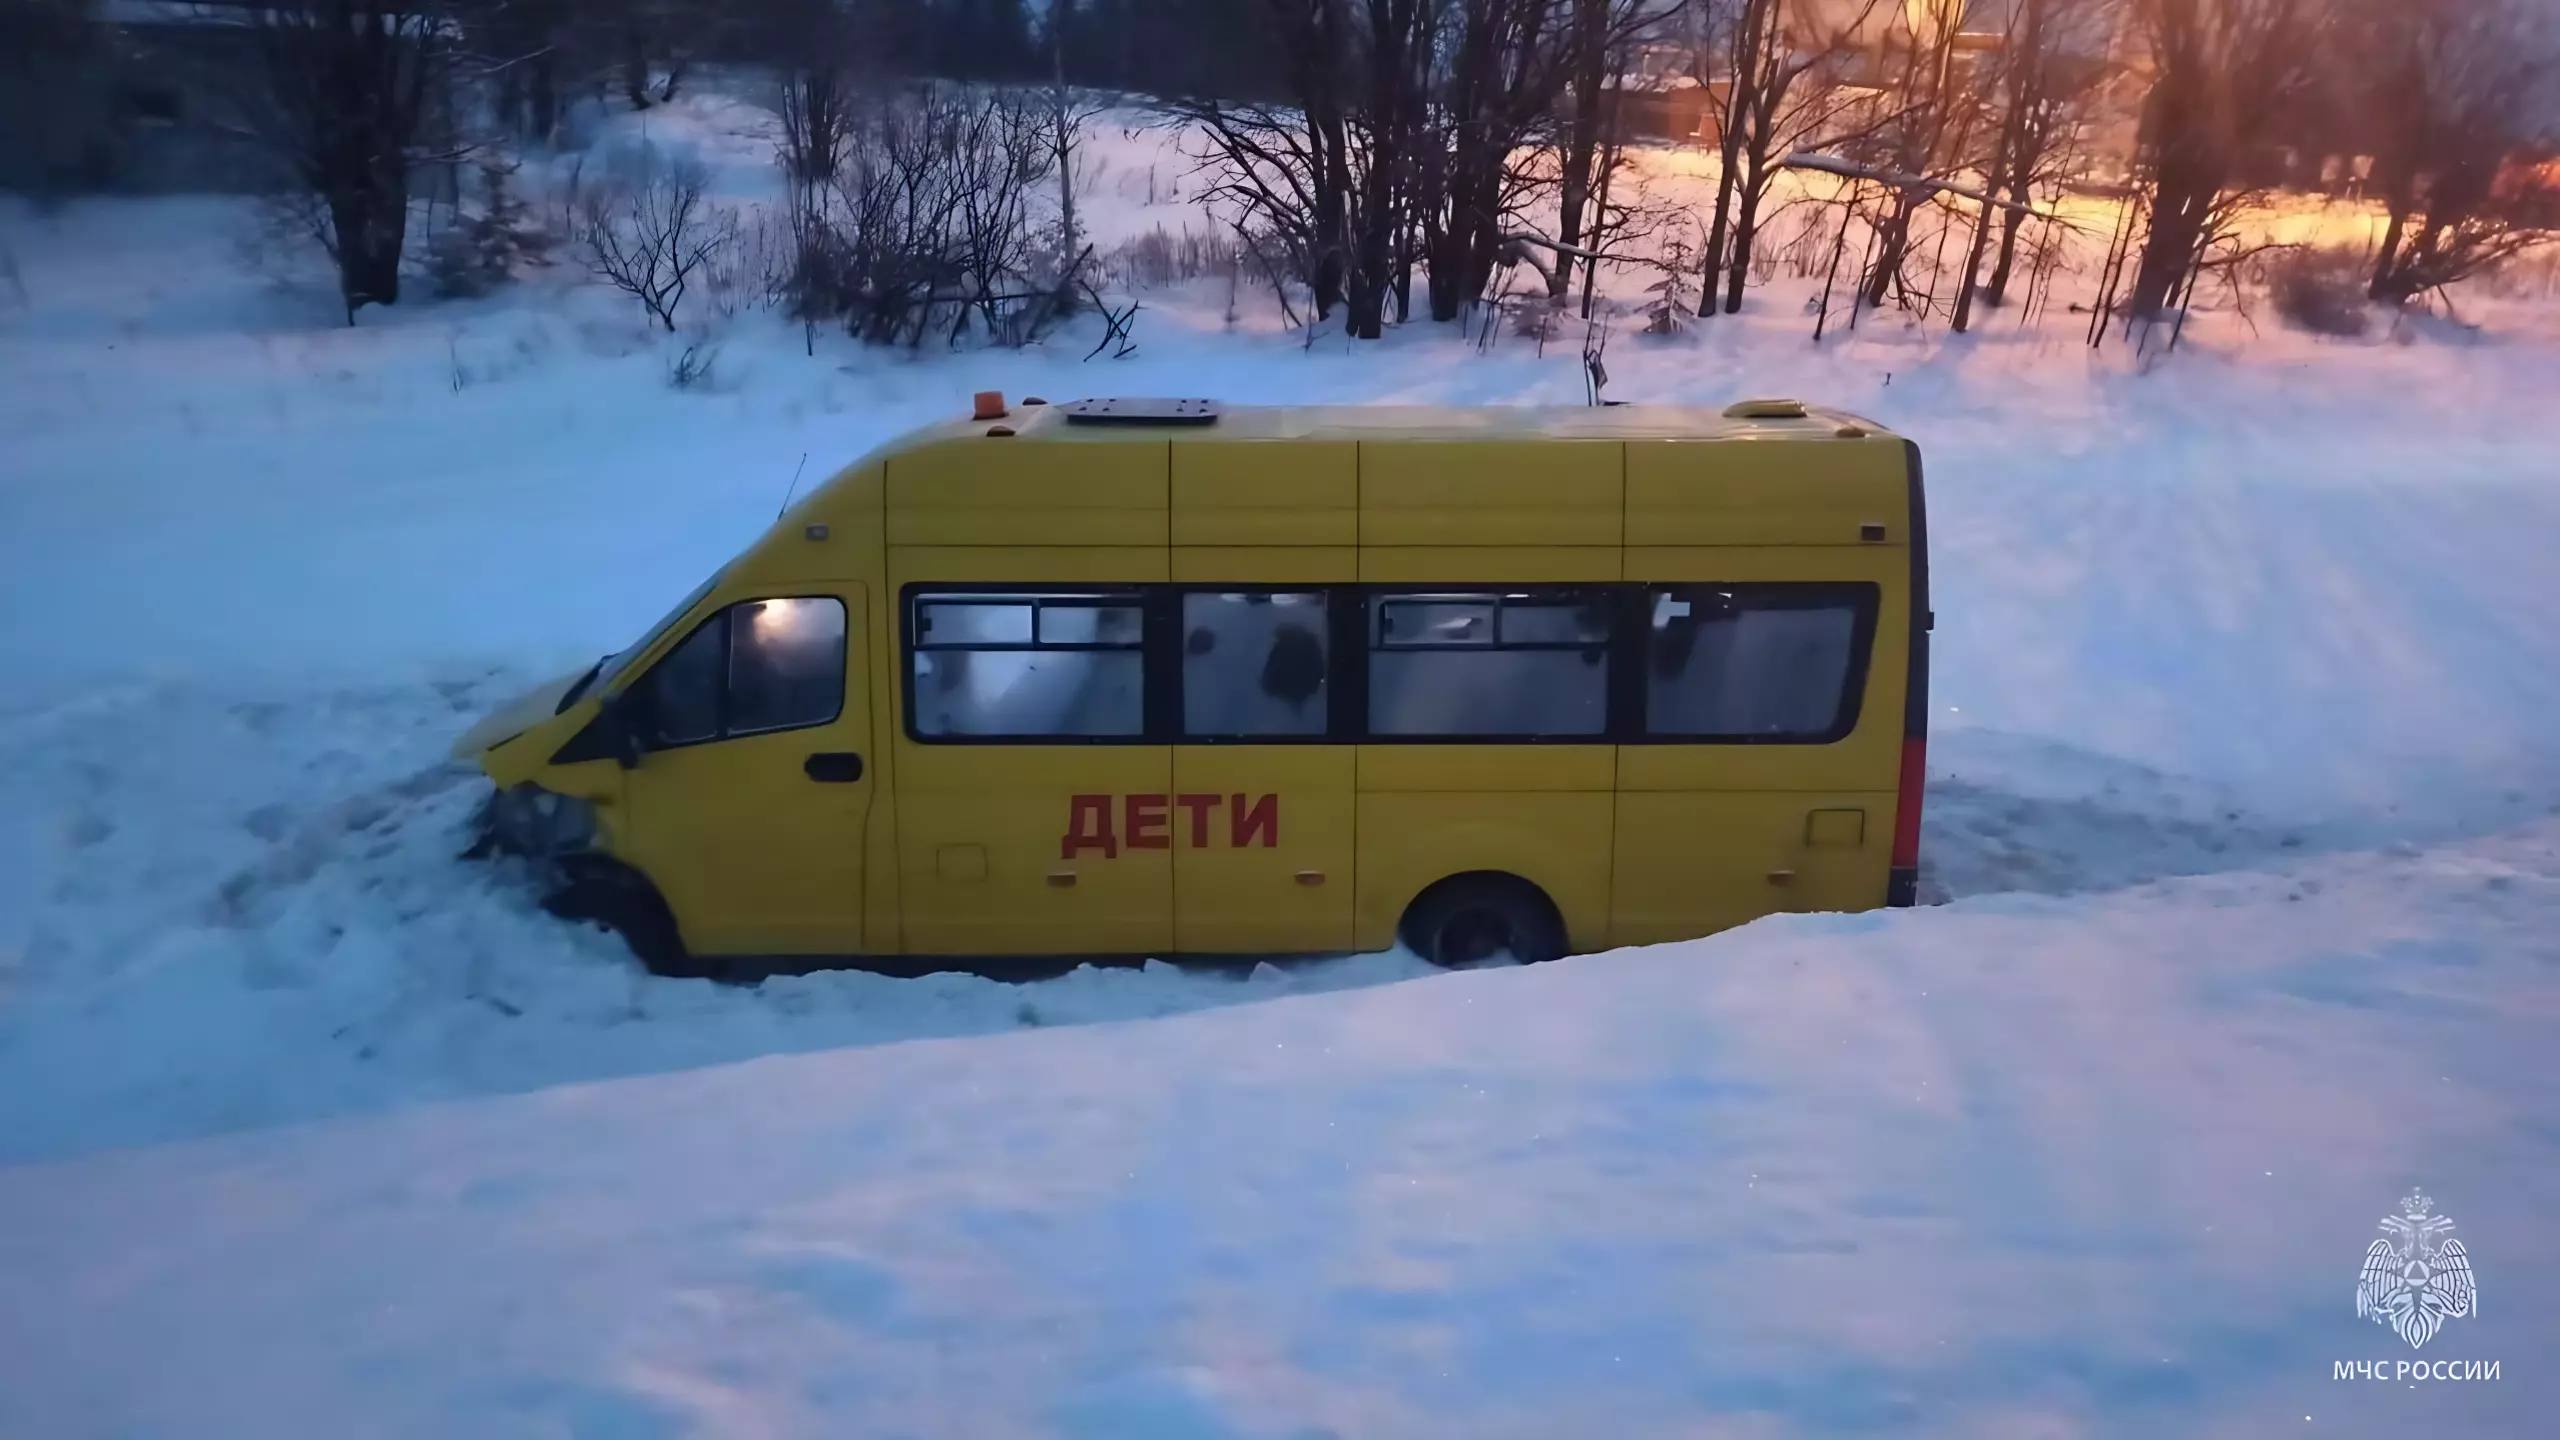 14 пострадавших в ДТП с автобусом в Игринском районе обратились к врачам